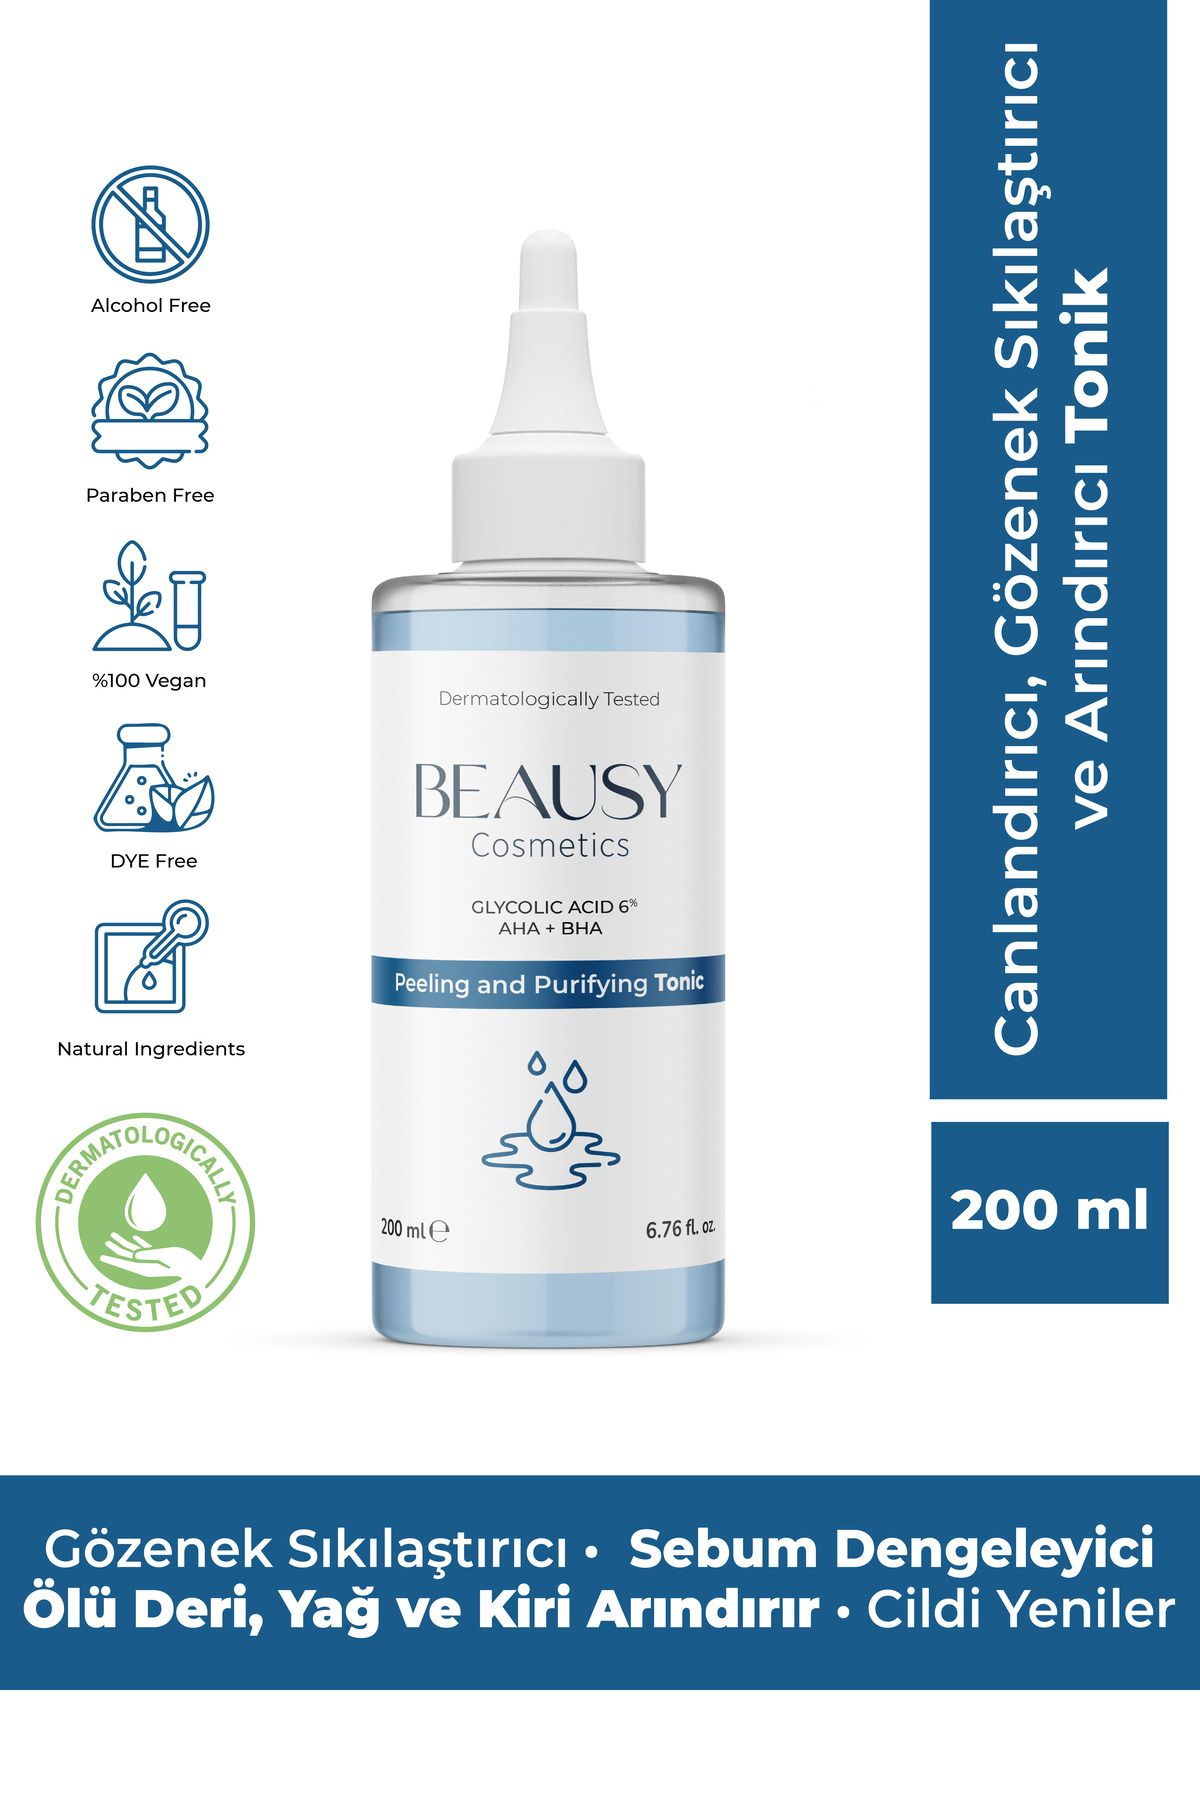 Beausy Cosmetics Canlandırıcı, Gözenek Sıkılaştırıcı ve Arındırıcı Tonik 200ml (Glycolic Acid 6%, AHA + BHA)